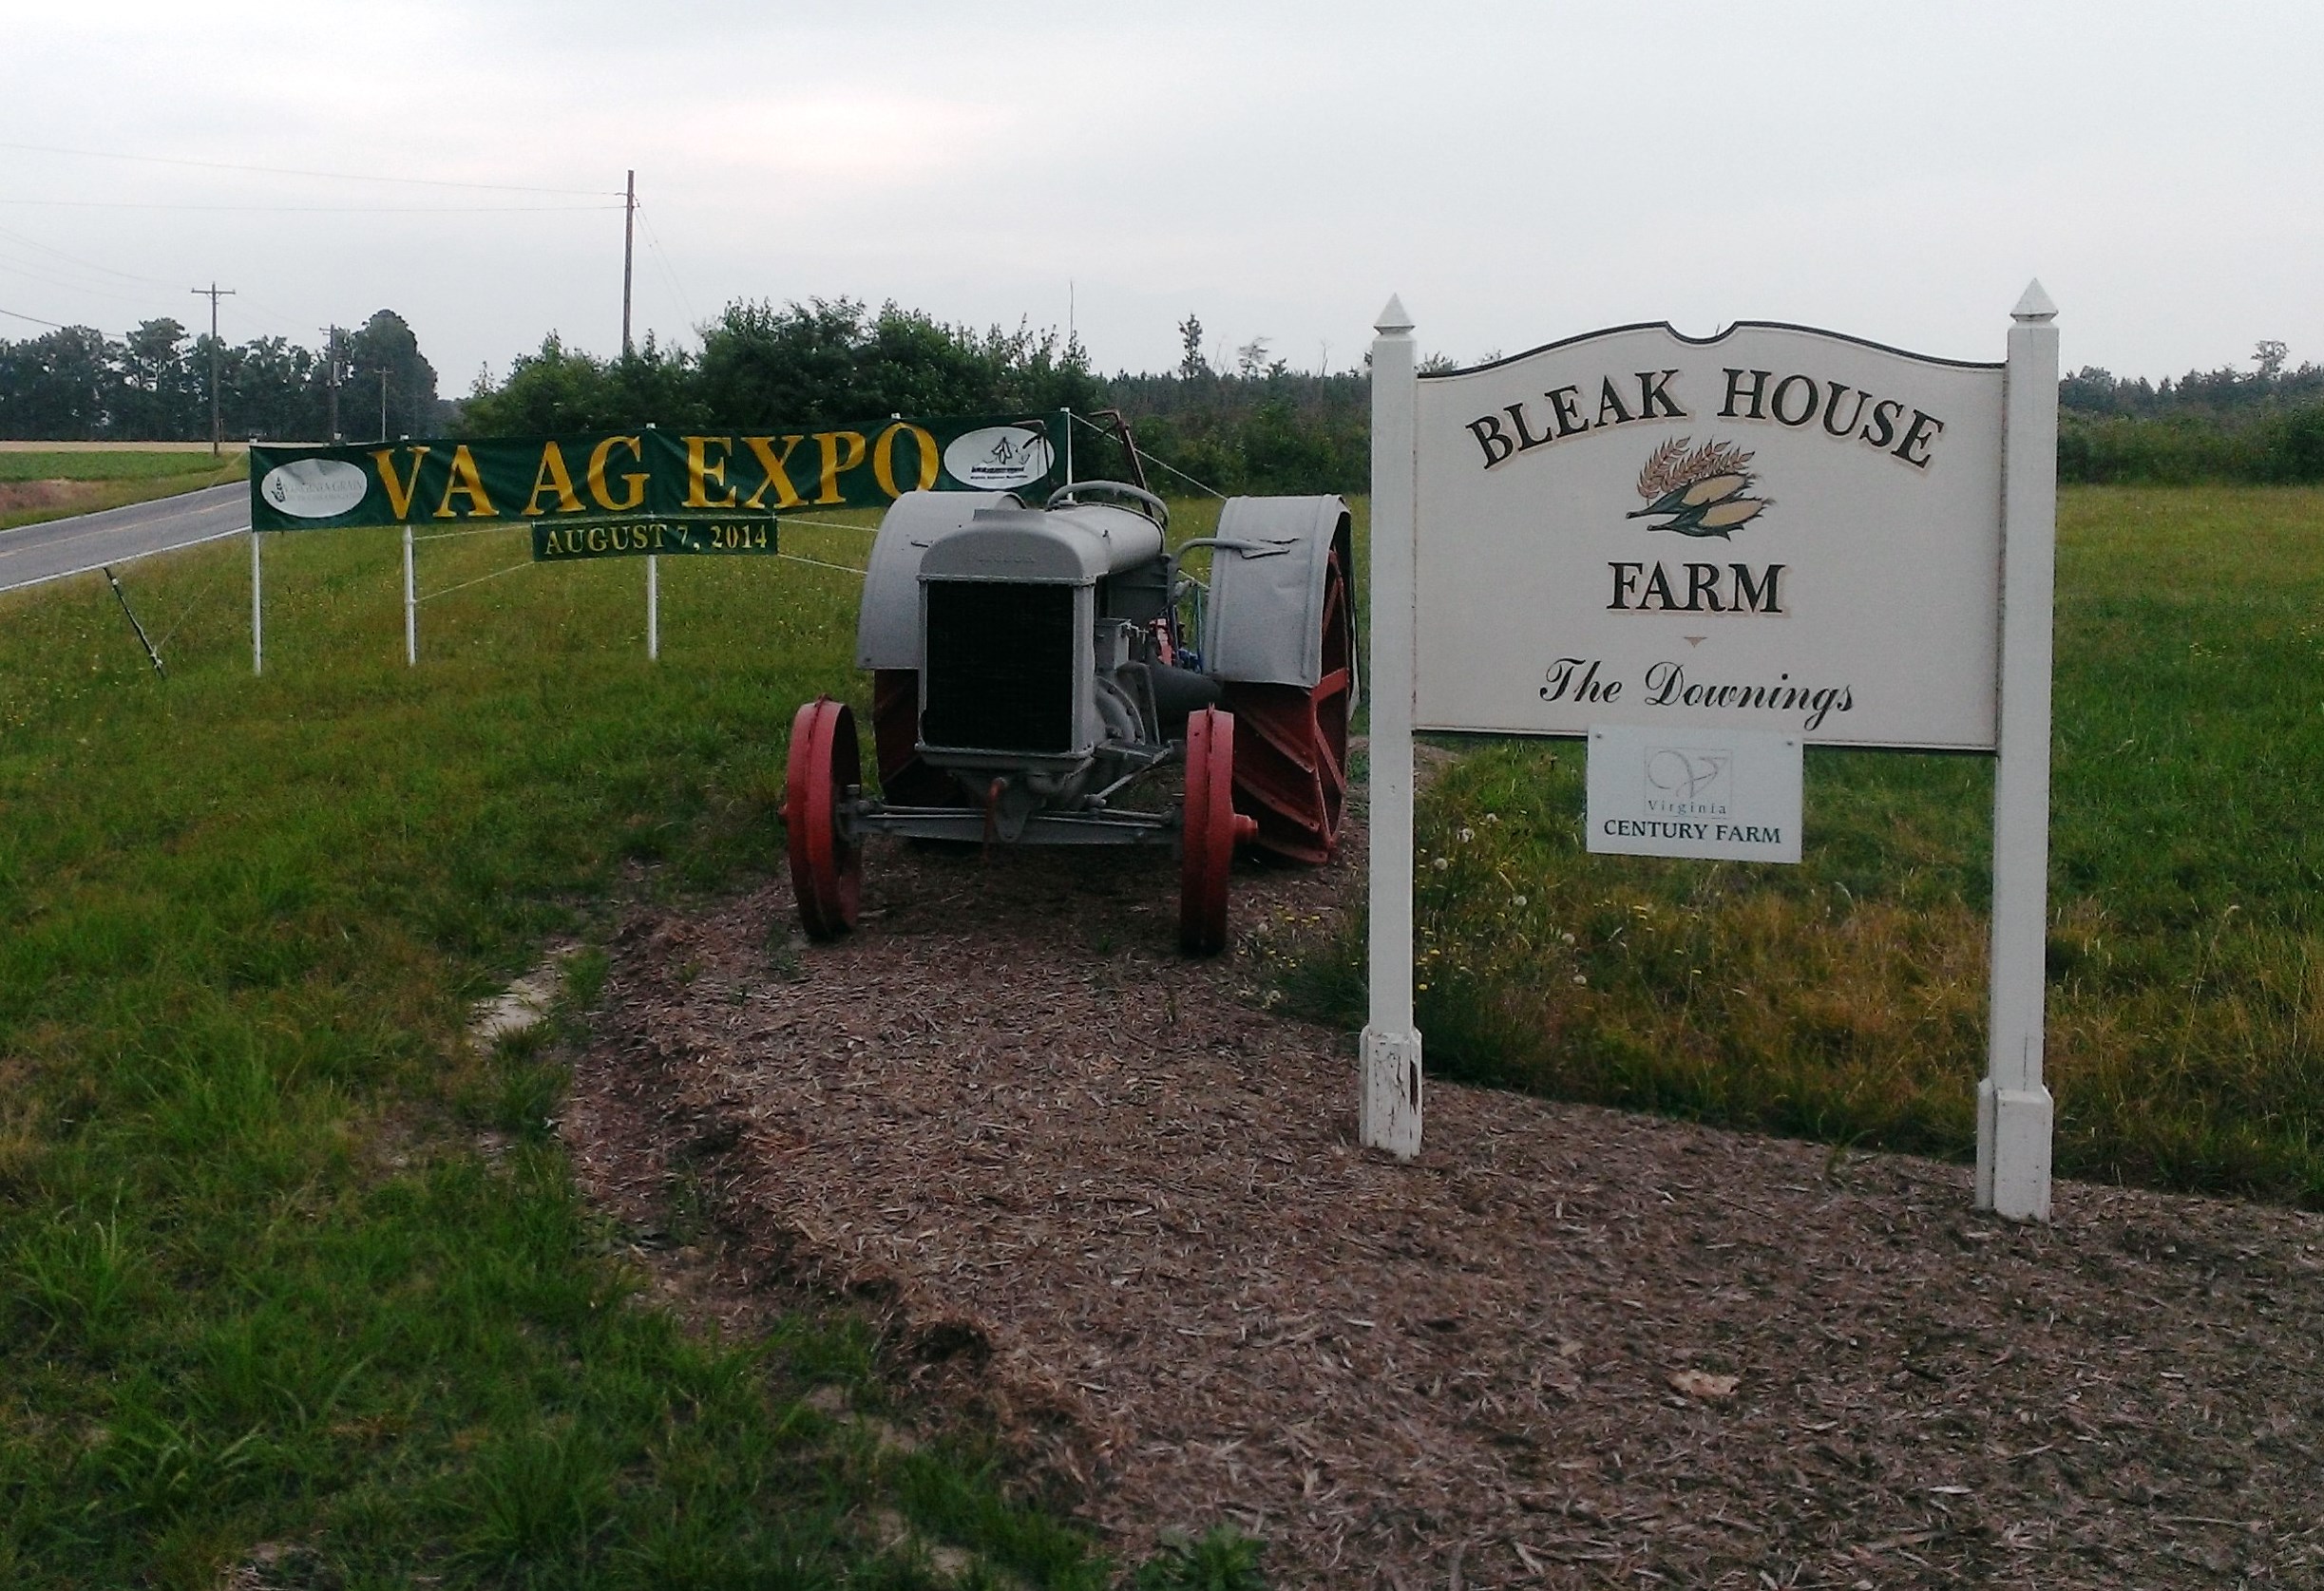 Bleak House Farm, Home of the 2014 Virginia Ag Expo